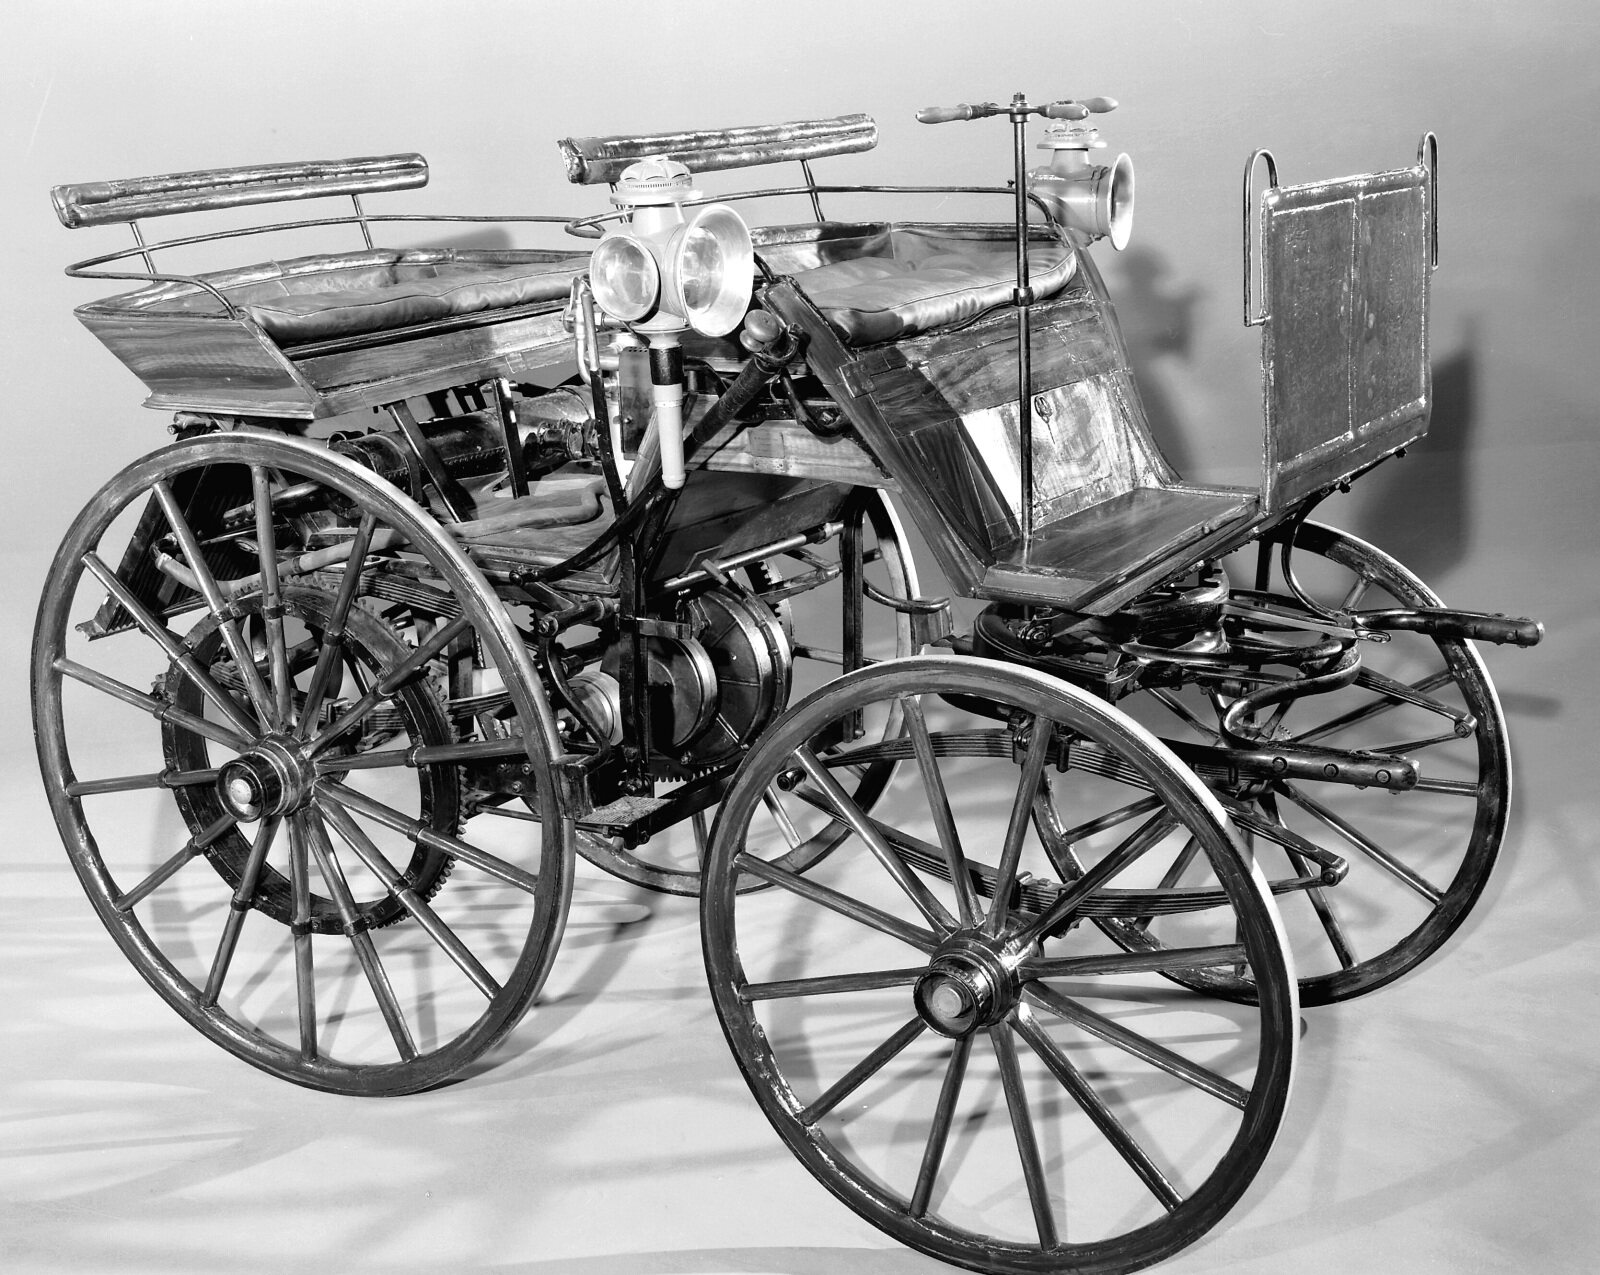 PKW2021 Daimler motor carriage, 1886